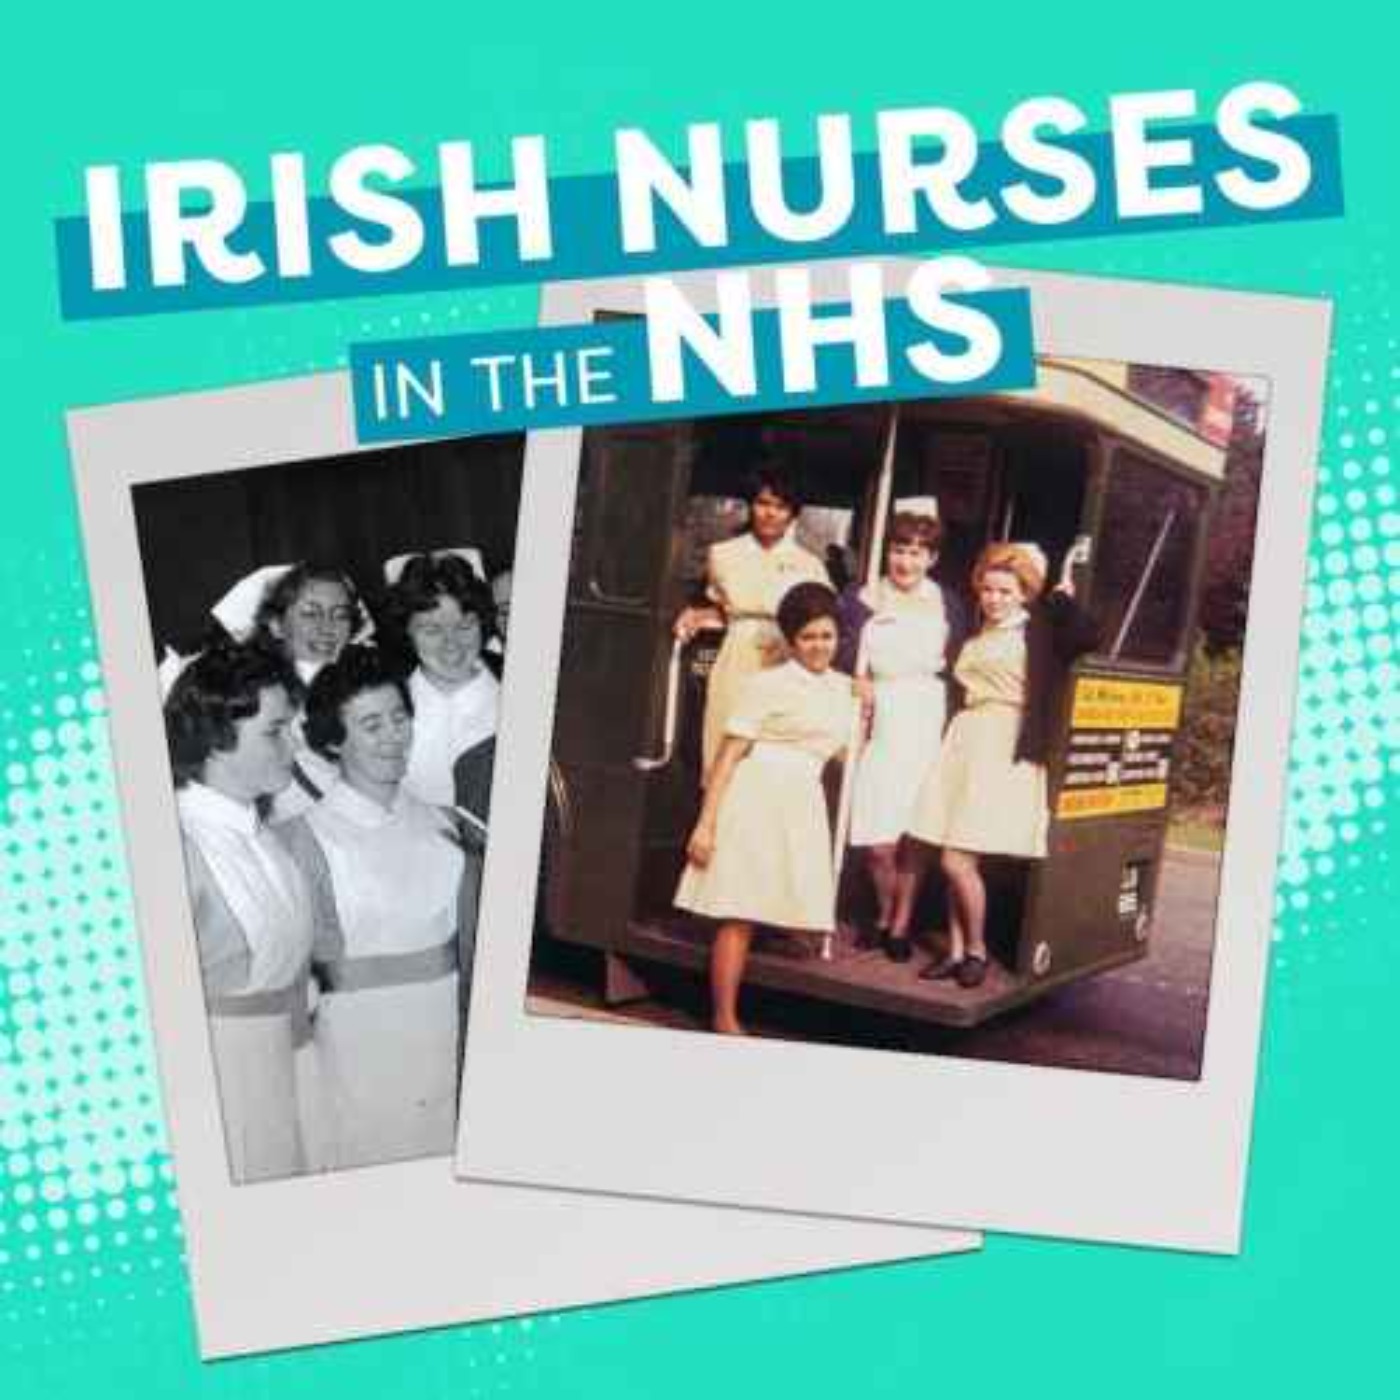 Nurse’s experiences of anti-Irish discrimination in Britain